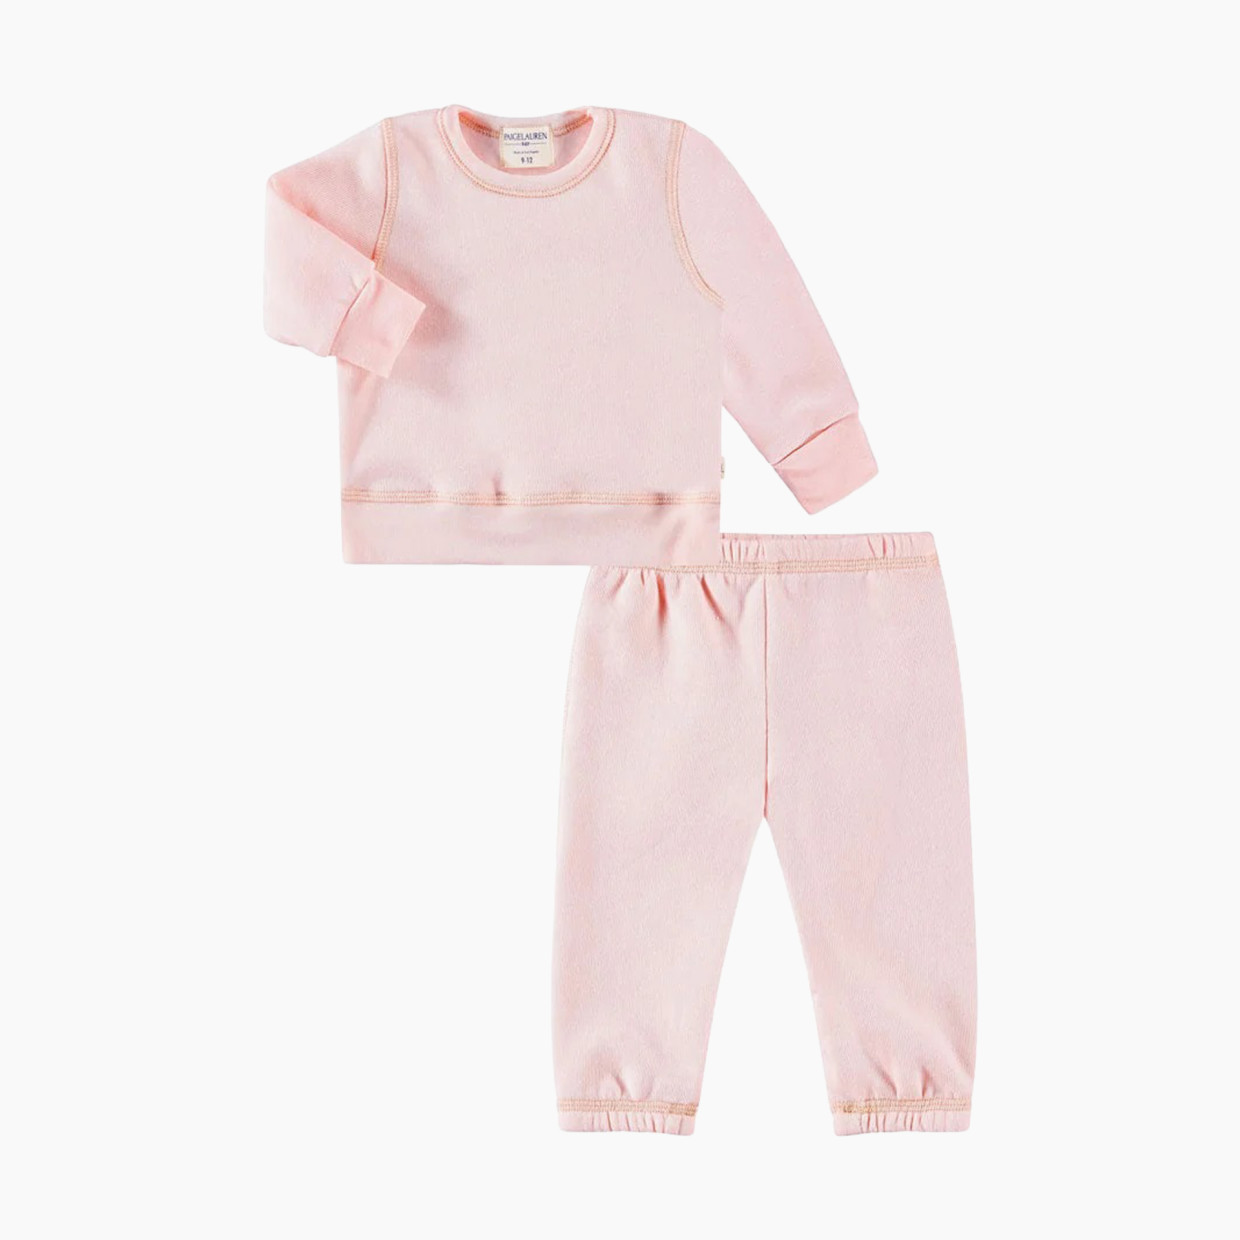 Paige Lauren Baby Blanket Blend Fleece Loungewear Sets-Splendid - Pink, 12-18m.